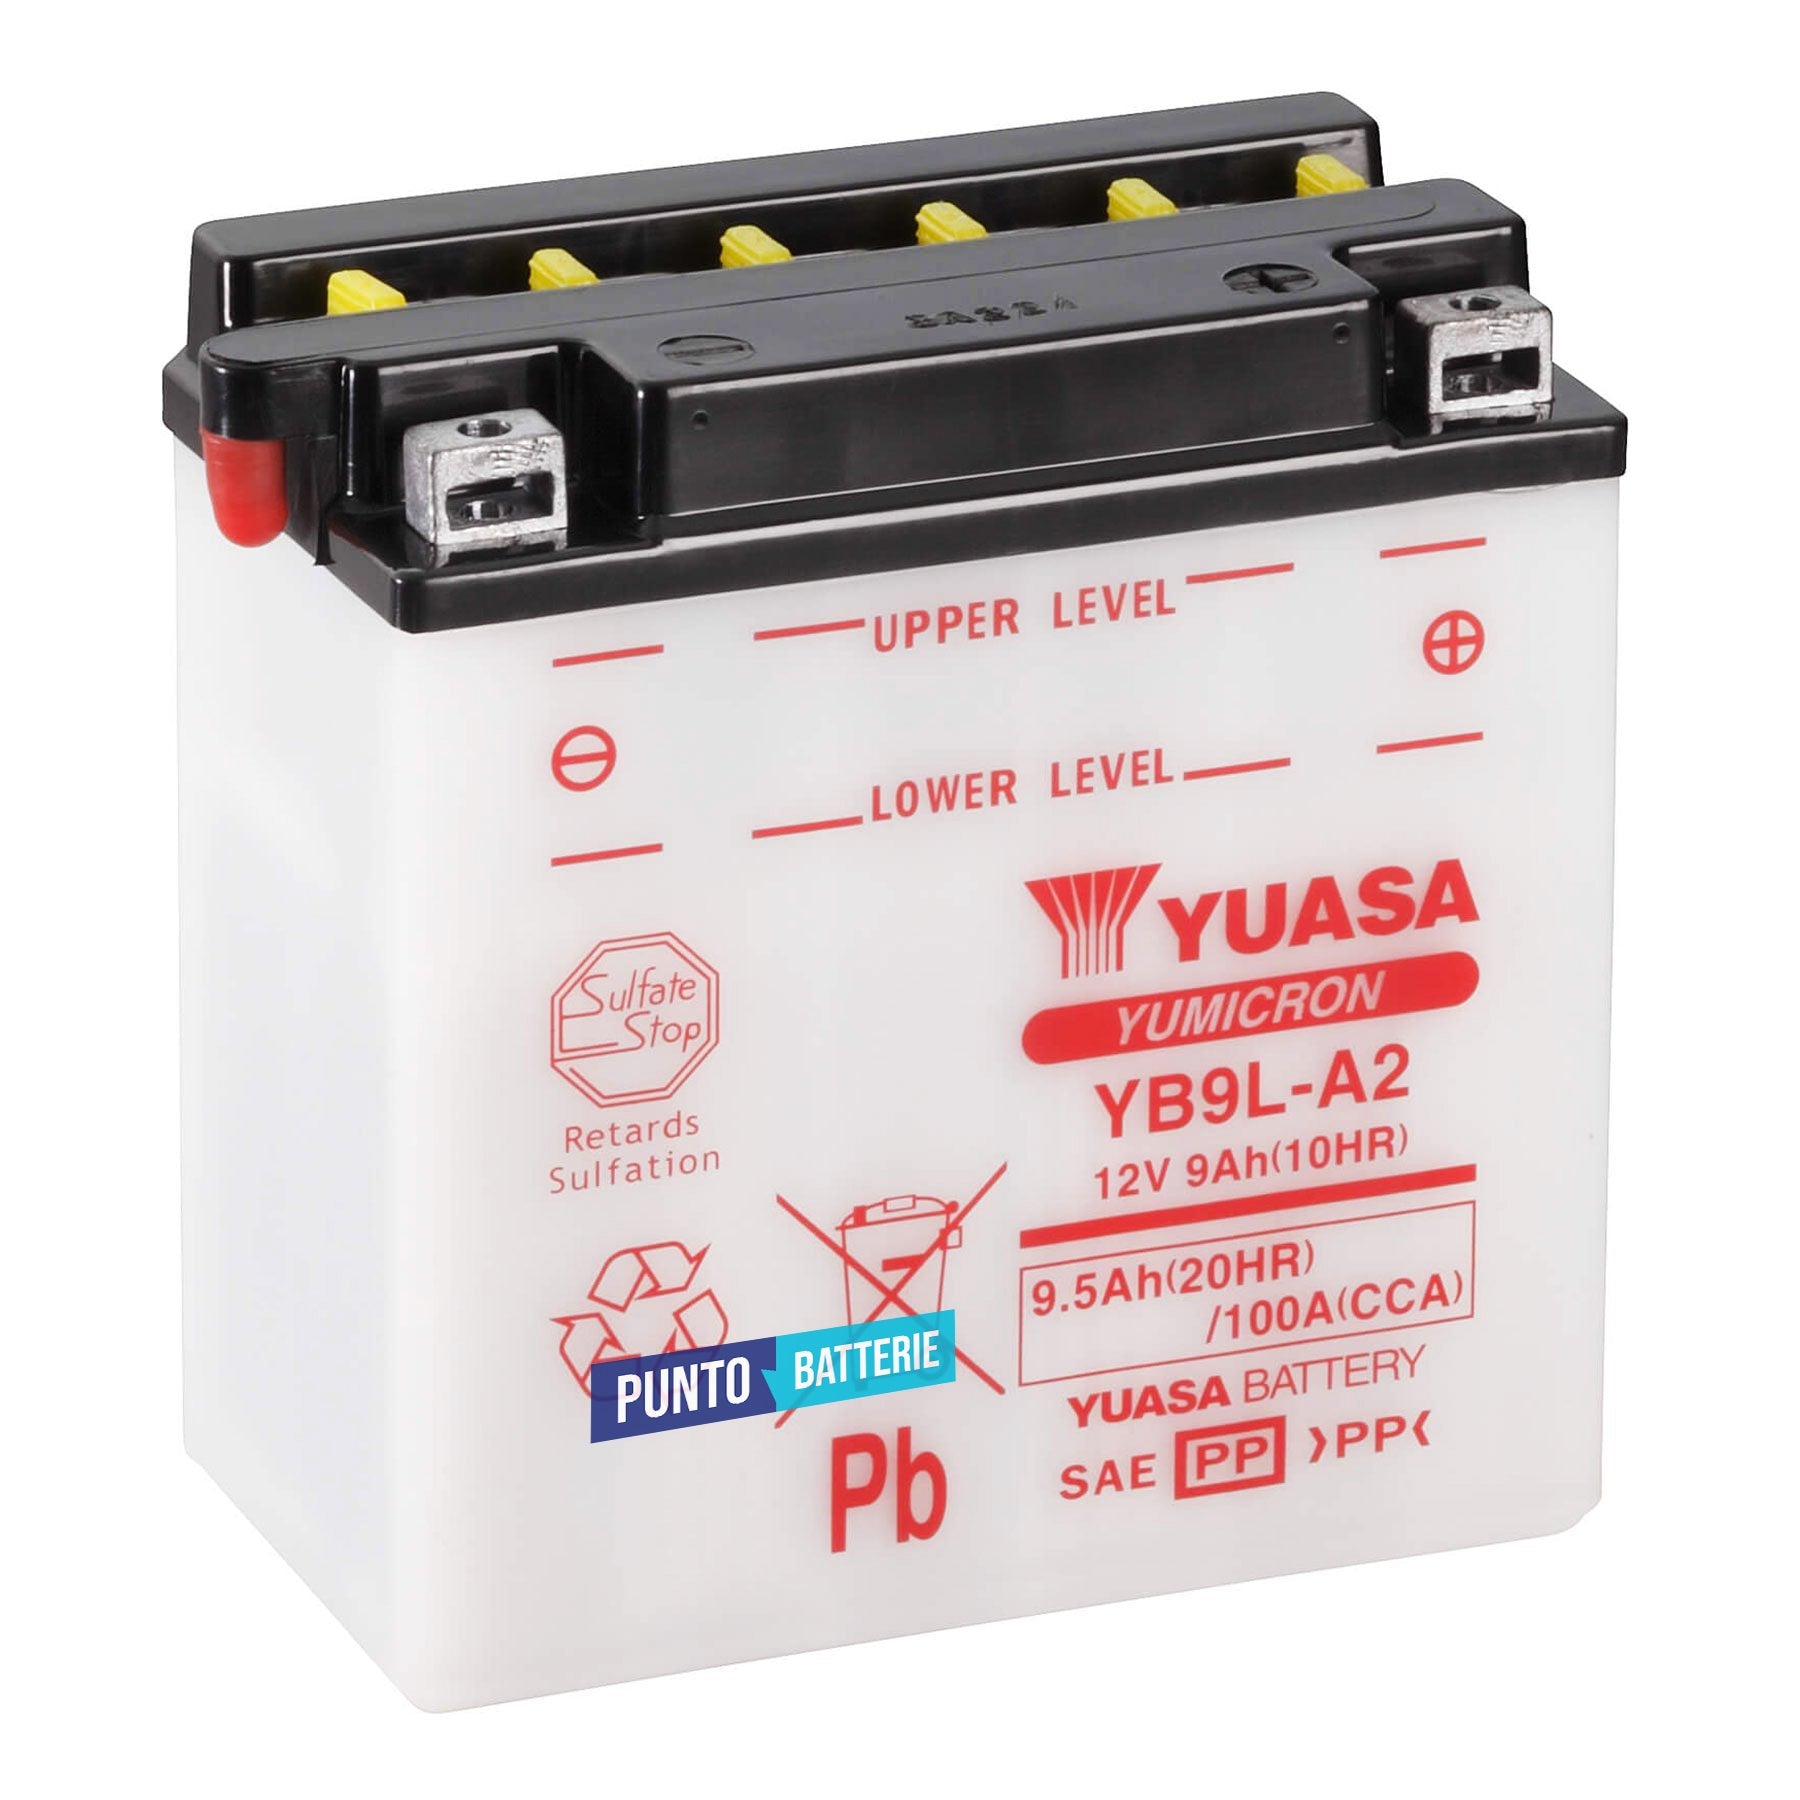 Batteria originale Yuasa YuMicron YB9L-A2, dimensioni 135 x 75 x 139, polo positivo a destra, 12 volt, 9 amperora, 100 ampere. Batteria per moto, scooter e powersport.